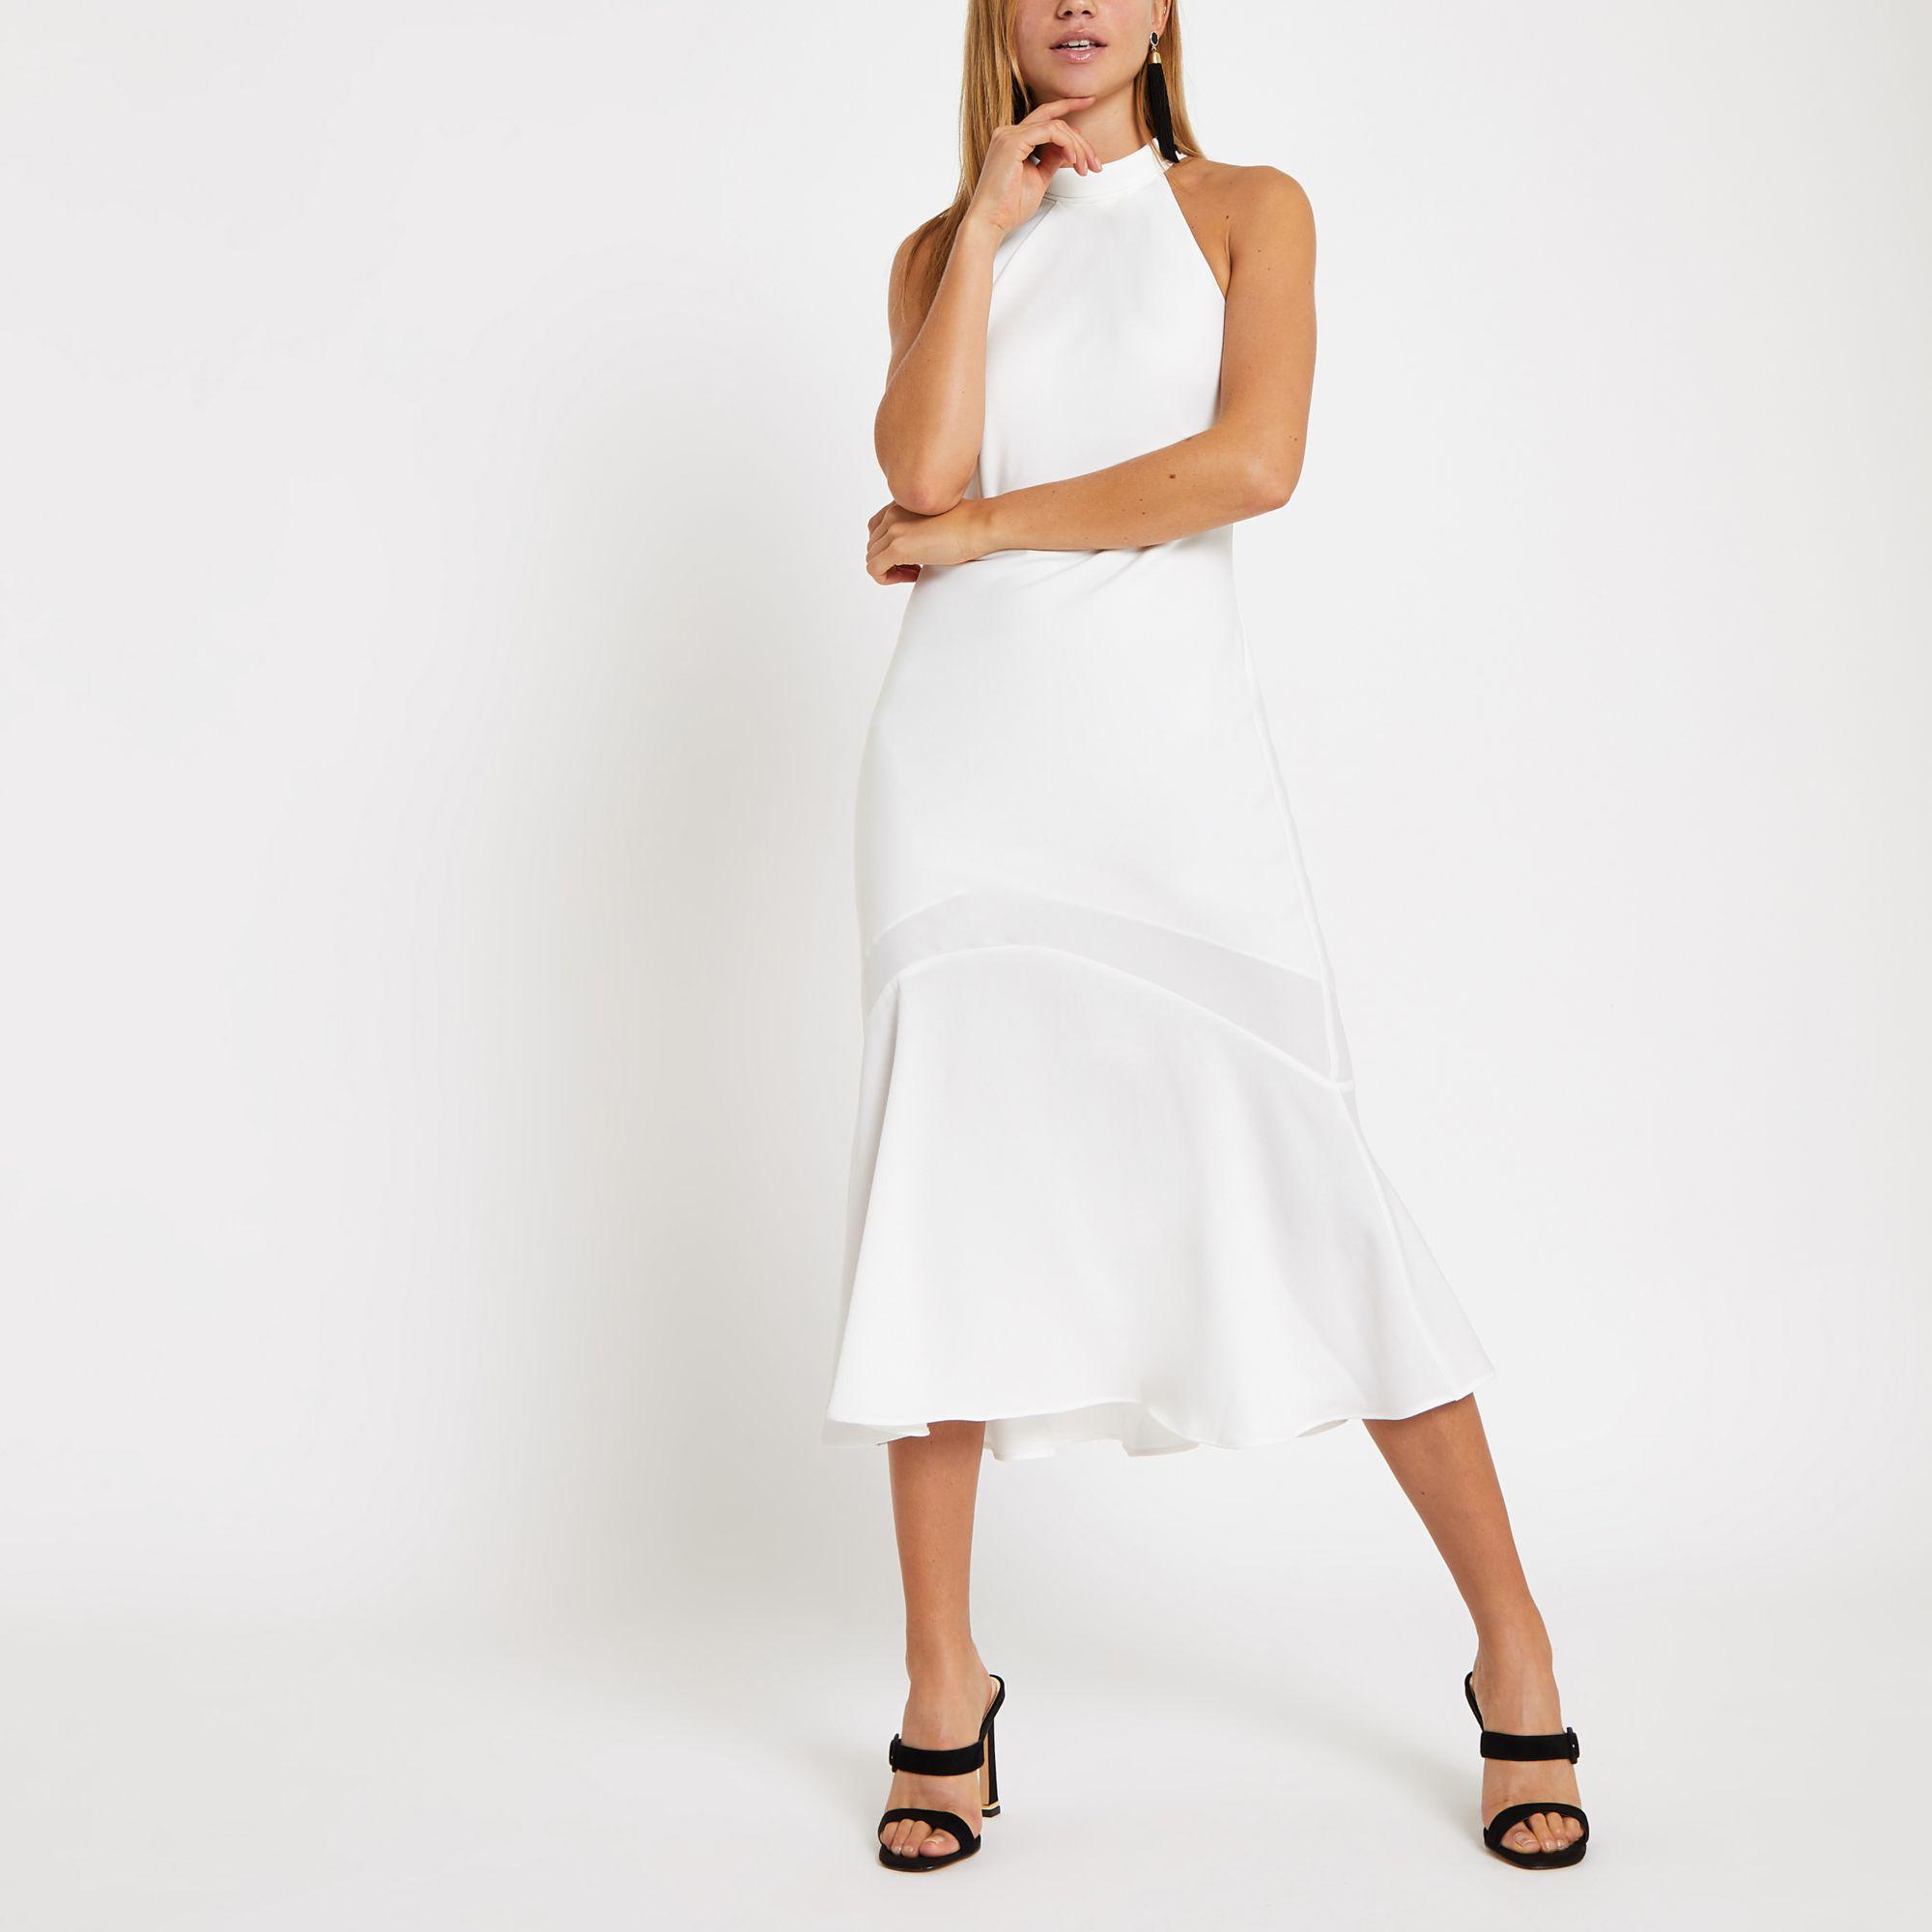 Halter Neck Dress White | vlr.eng.br